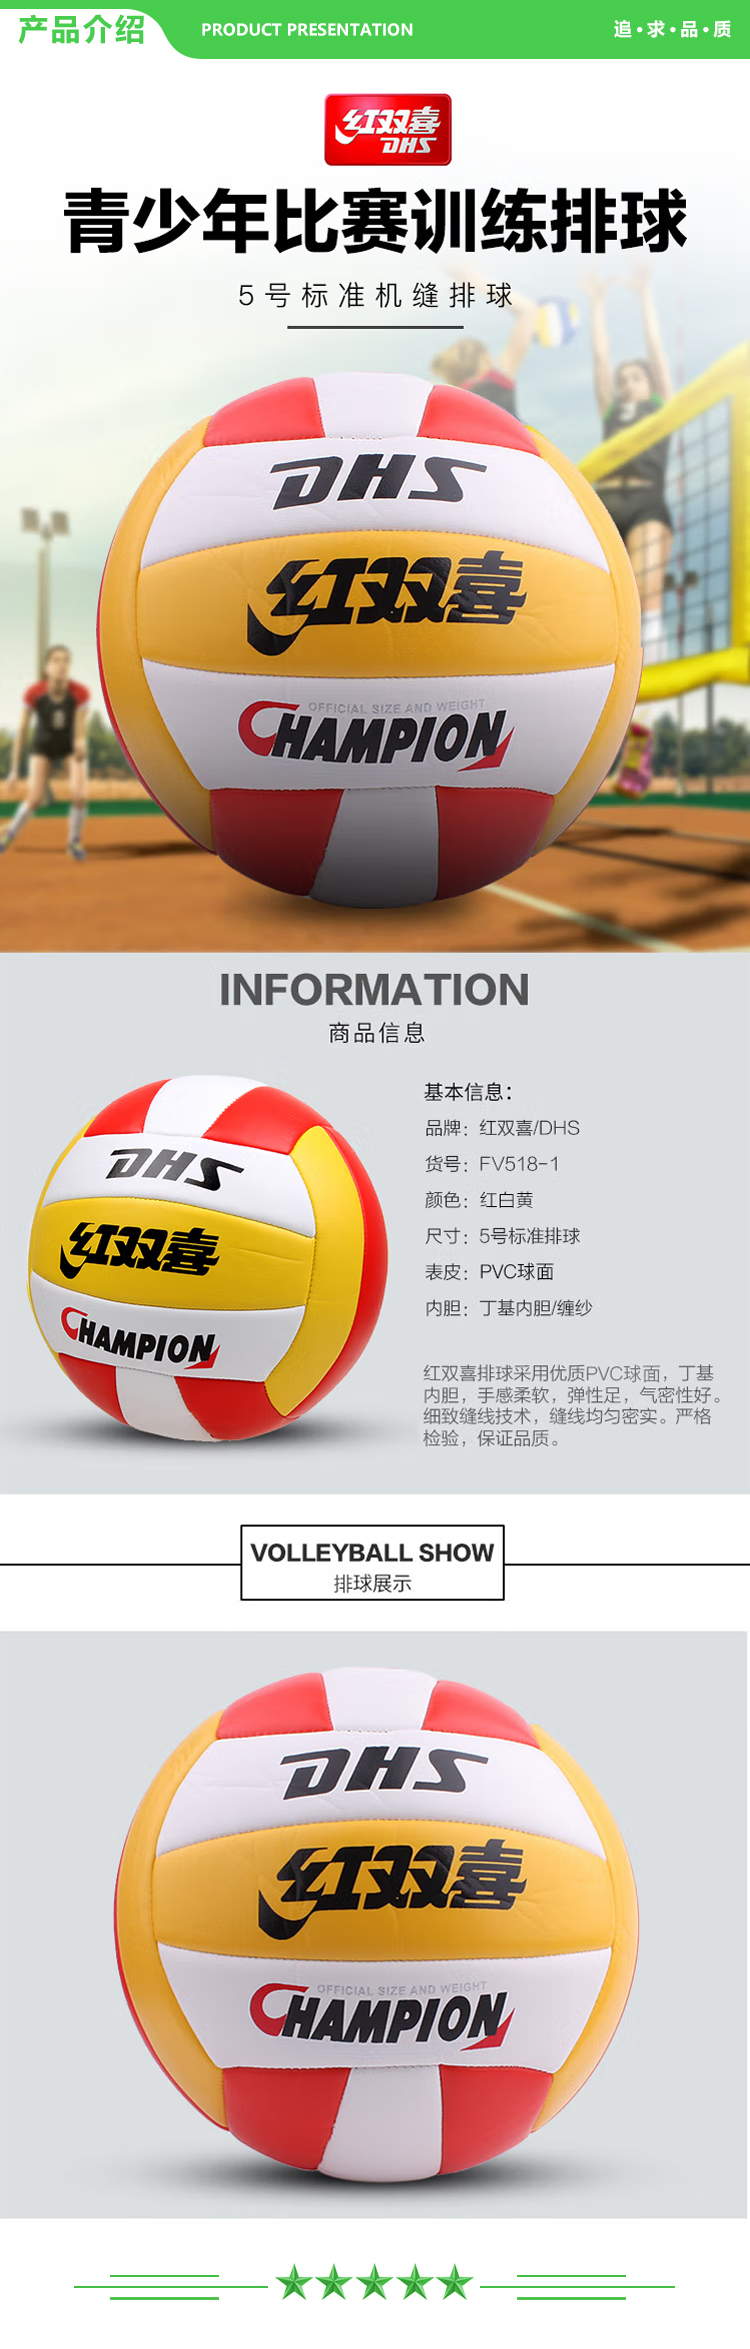 红双喜 DHS FV518-1 红白黄 5号排球成人学生专用中考初中生训练比赛教学 充气软式沙滩球 .jpg